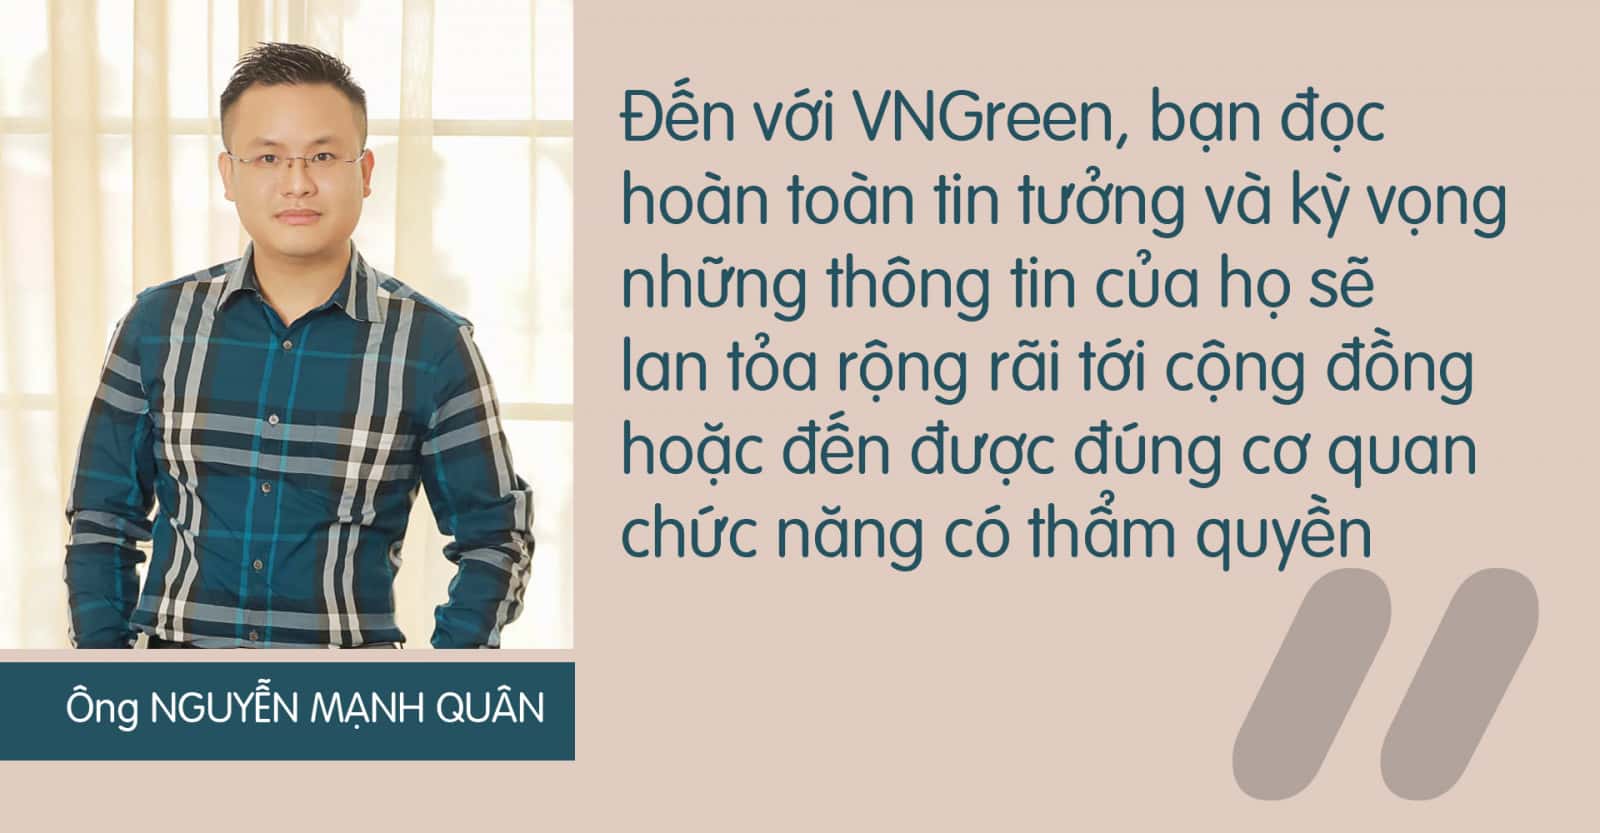 vngreen - Mạng xã hội vì một Việt Nam xanh